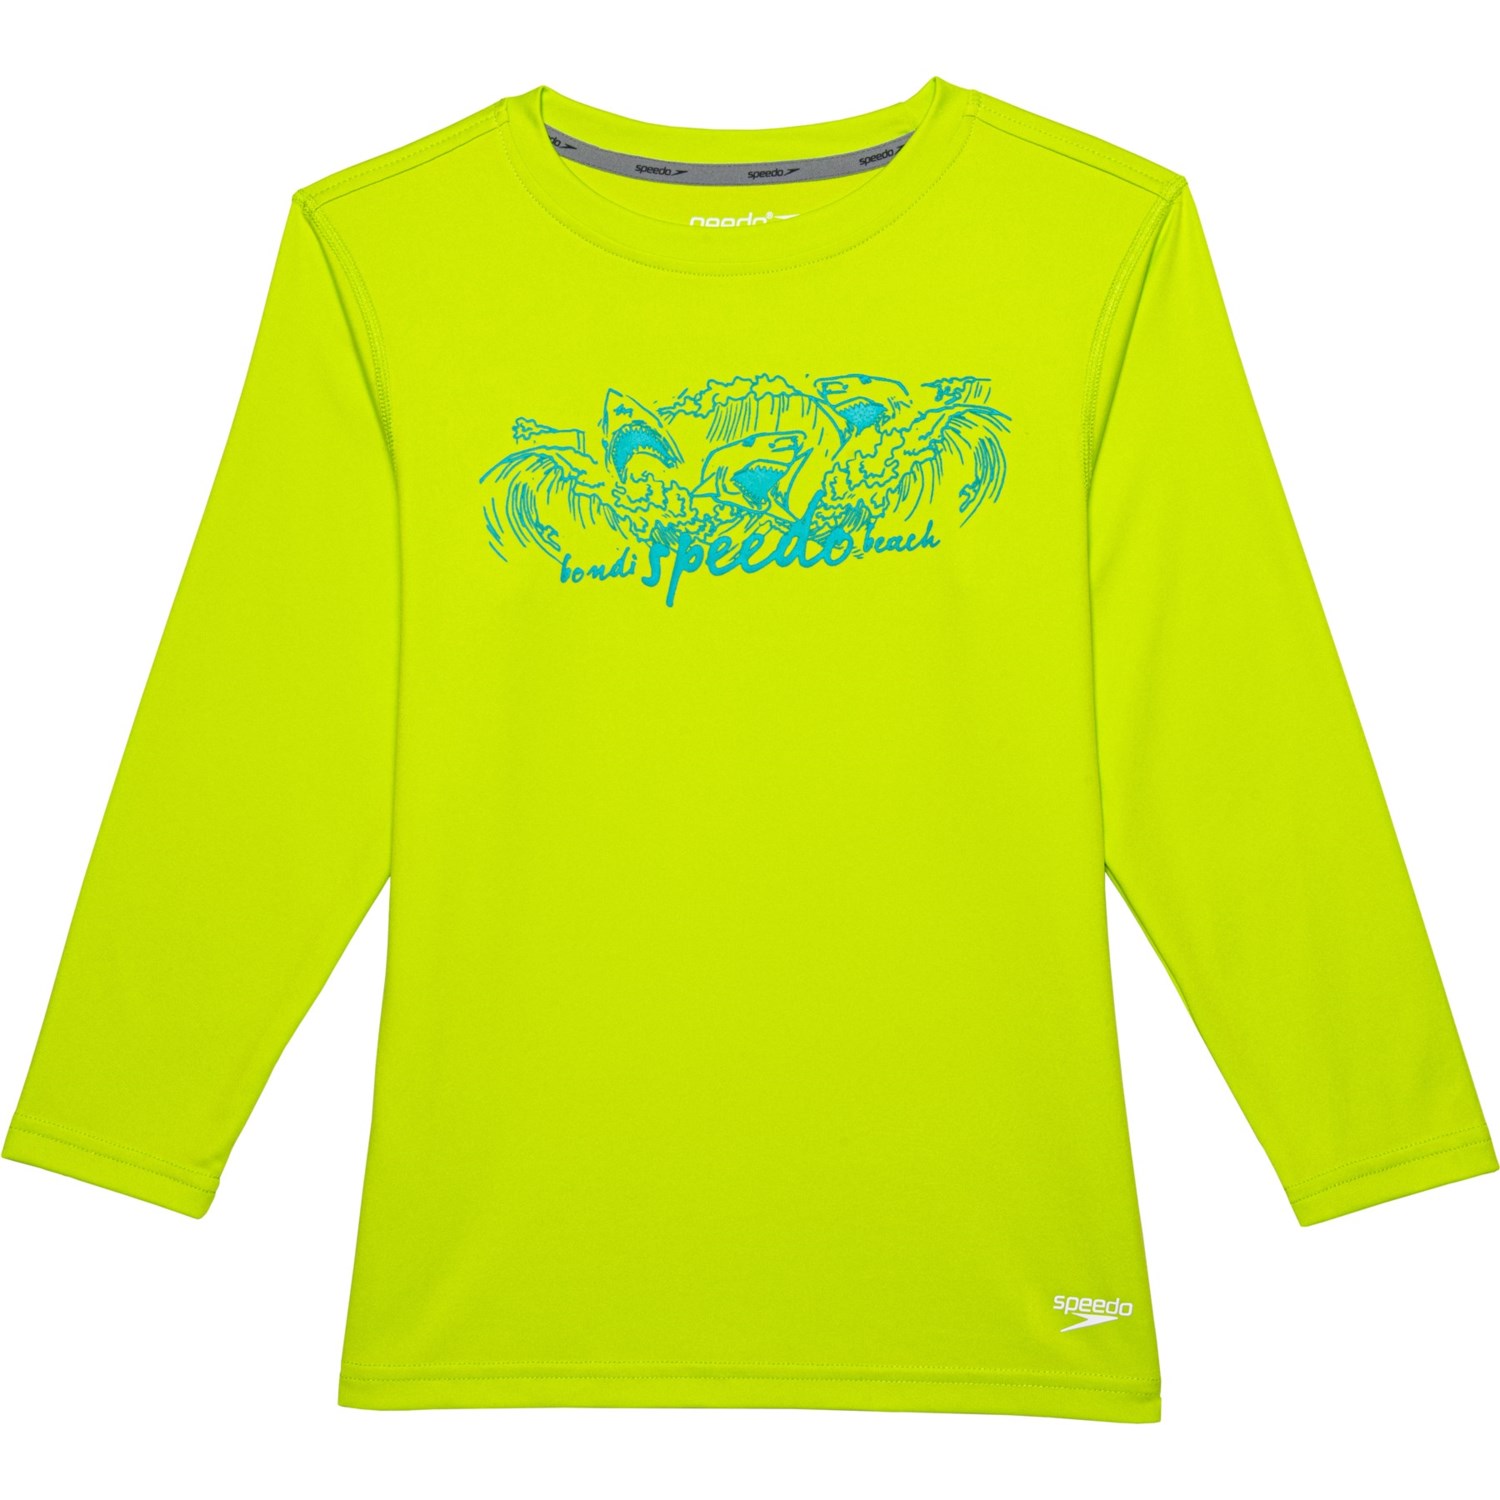 Speedo Boys and Girls Graphic Swim Shirt - UPF 50+, Long Sleeve